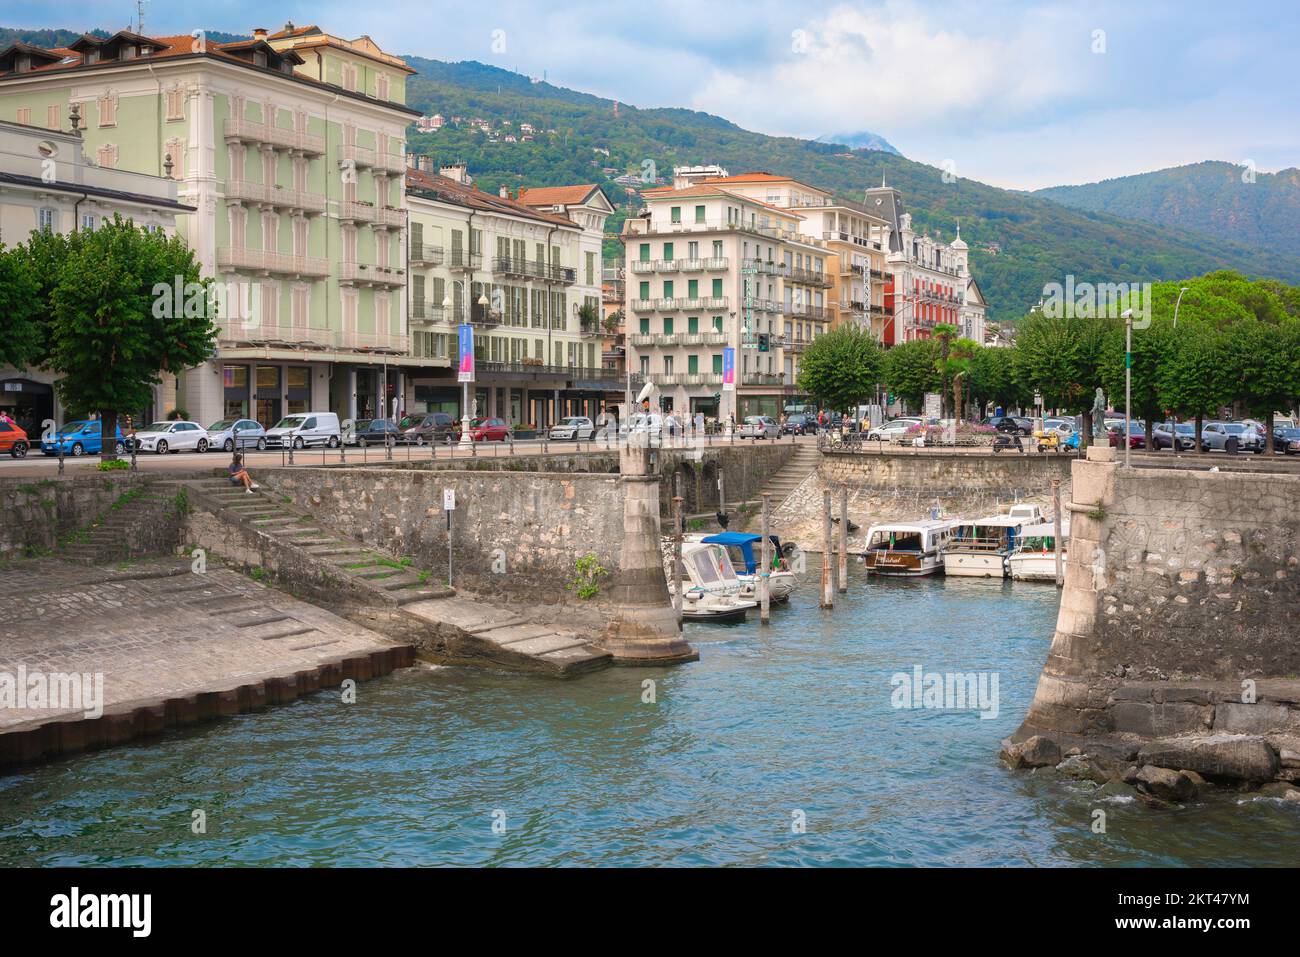 Stresa, vista sul vecchio porto situato accanto agli hotel sul lungolago in corso Italia a Stresa, Piemonte, Italia Foto Stock